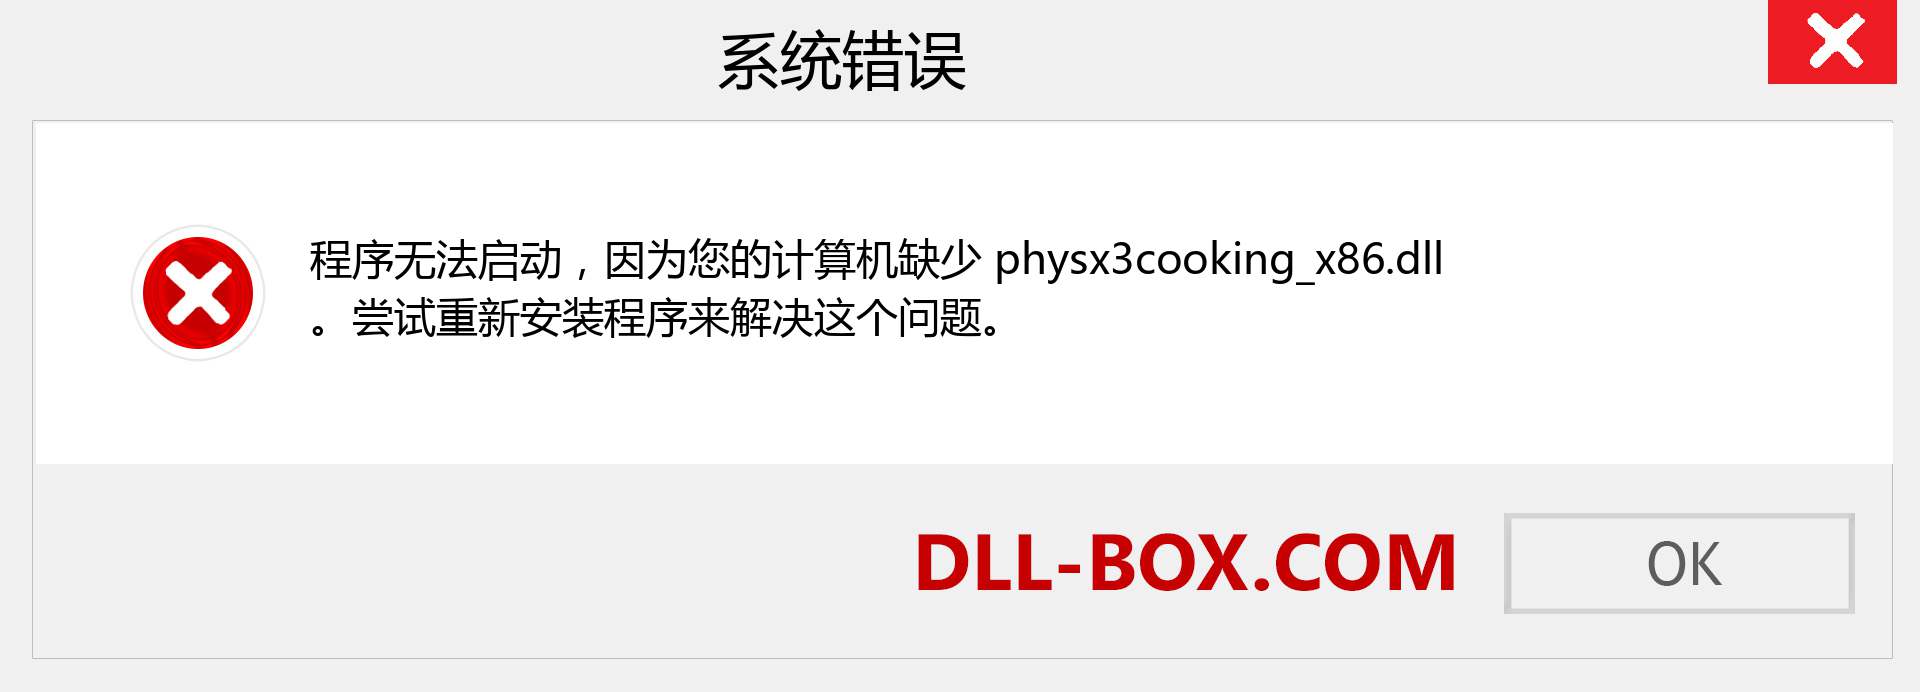 physx3cooking_x86.dll 文件丢失？。 适用于 Windows 7、8、10 的下载 - 修复 Windows、照片、图像上的 physx3cooking_x86 dll 丢失错误